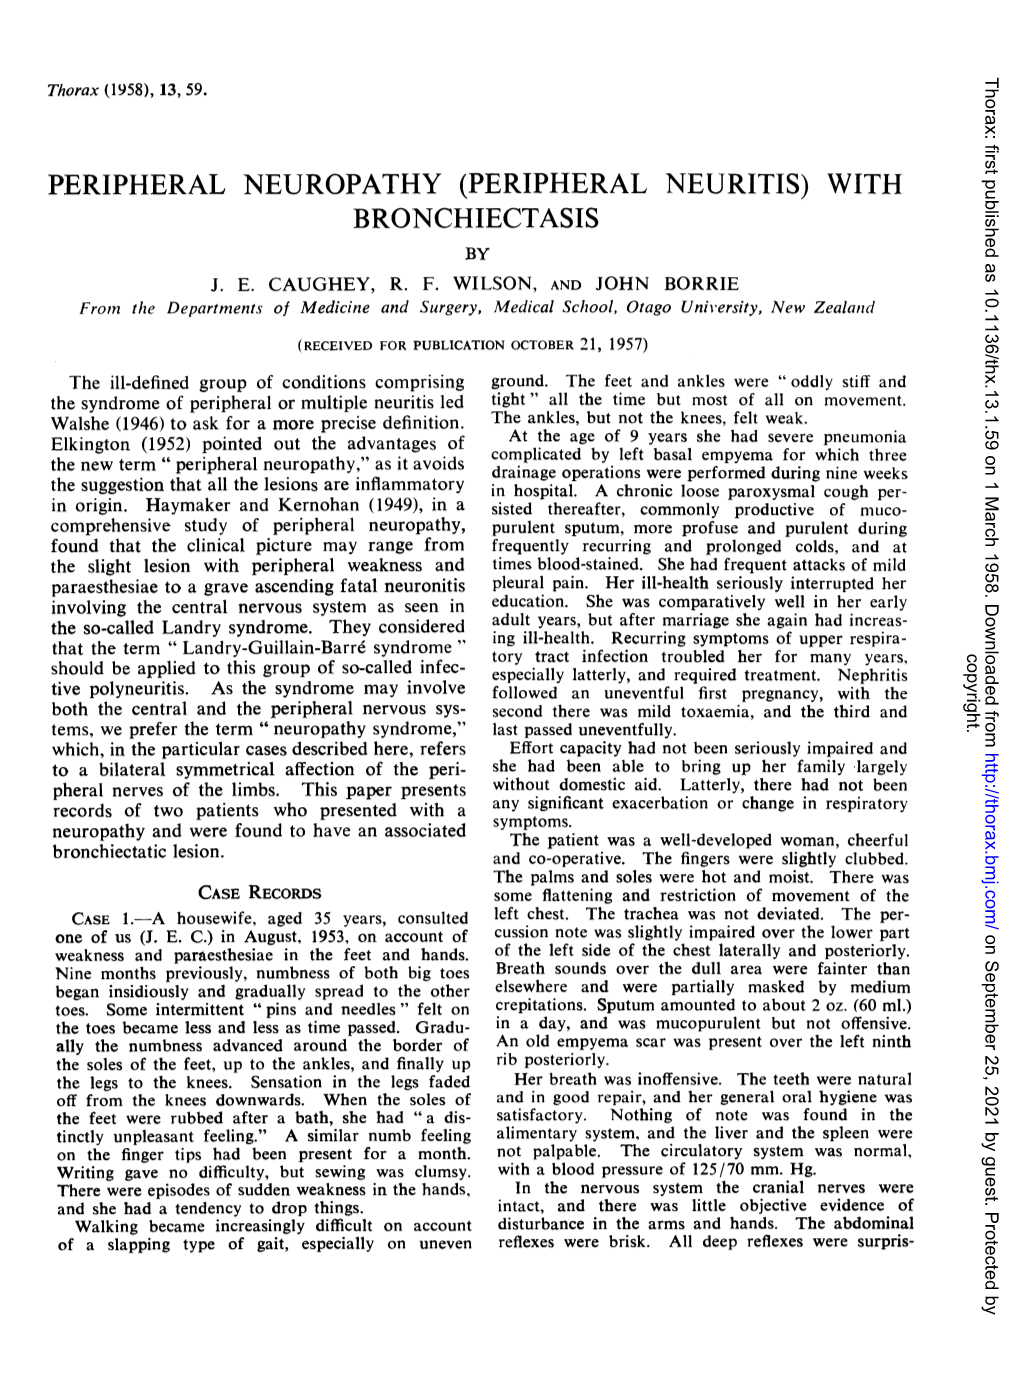 Peripheral Neuropathy (Peripheral Neuritis) with Bronchiectasis by J